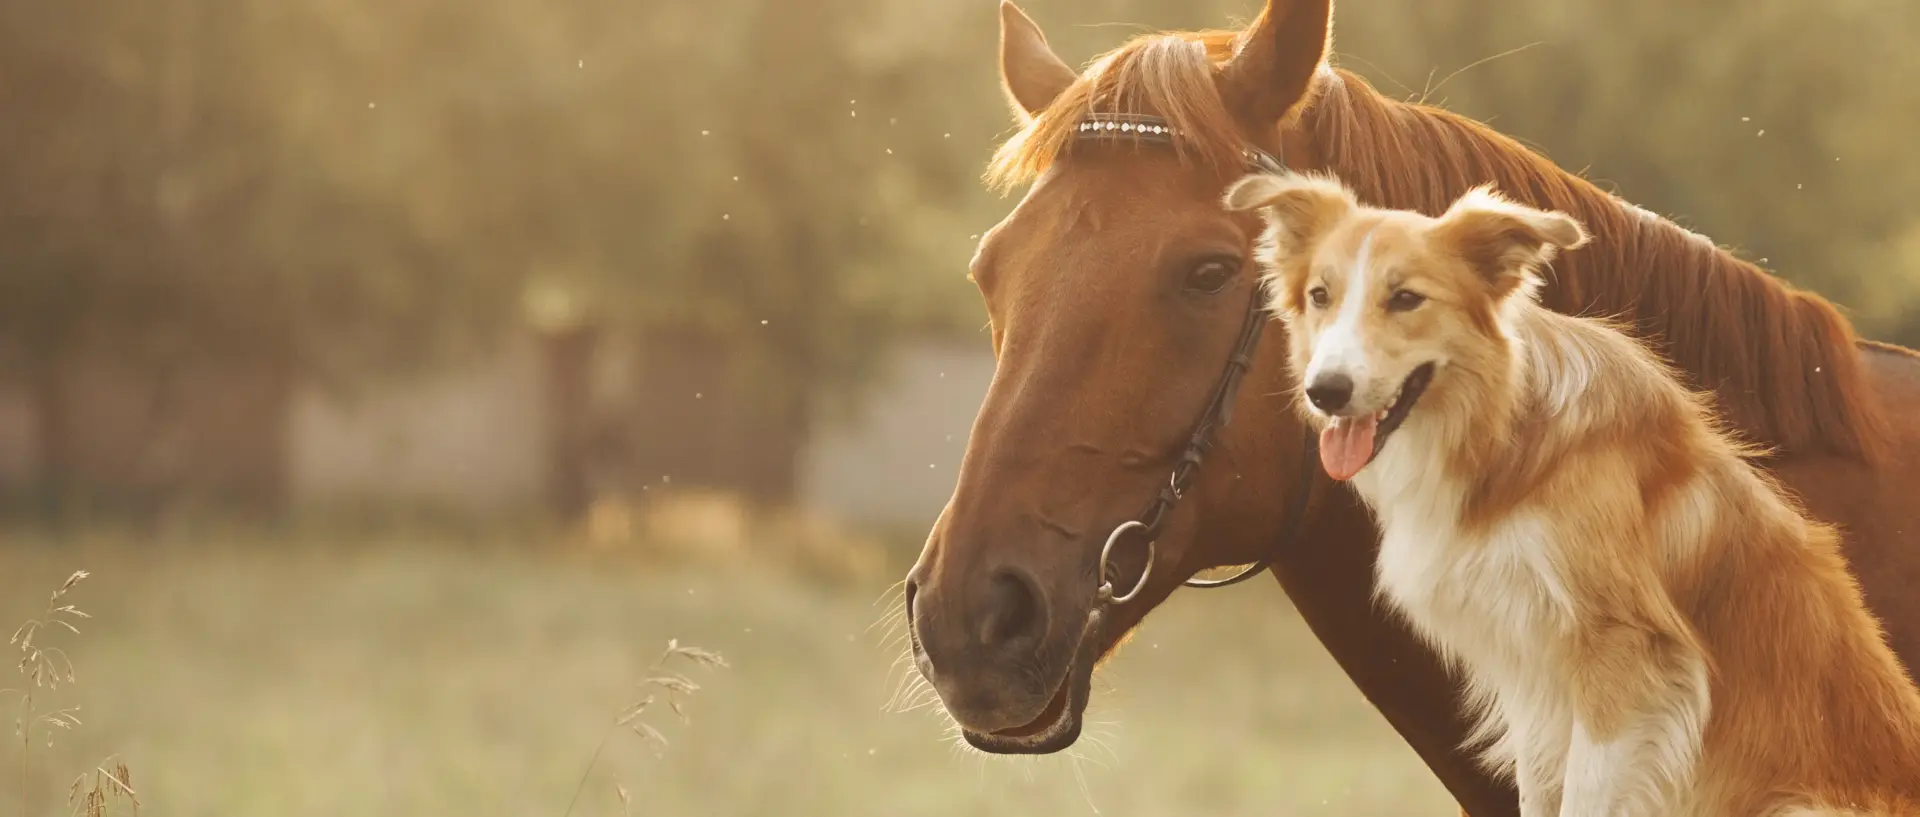 Pferd und Hund zusammen in der Natur